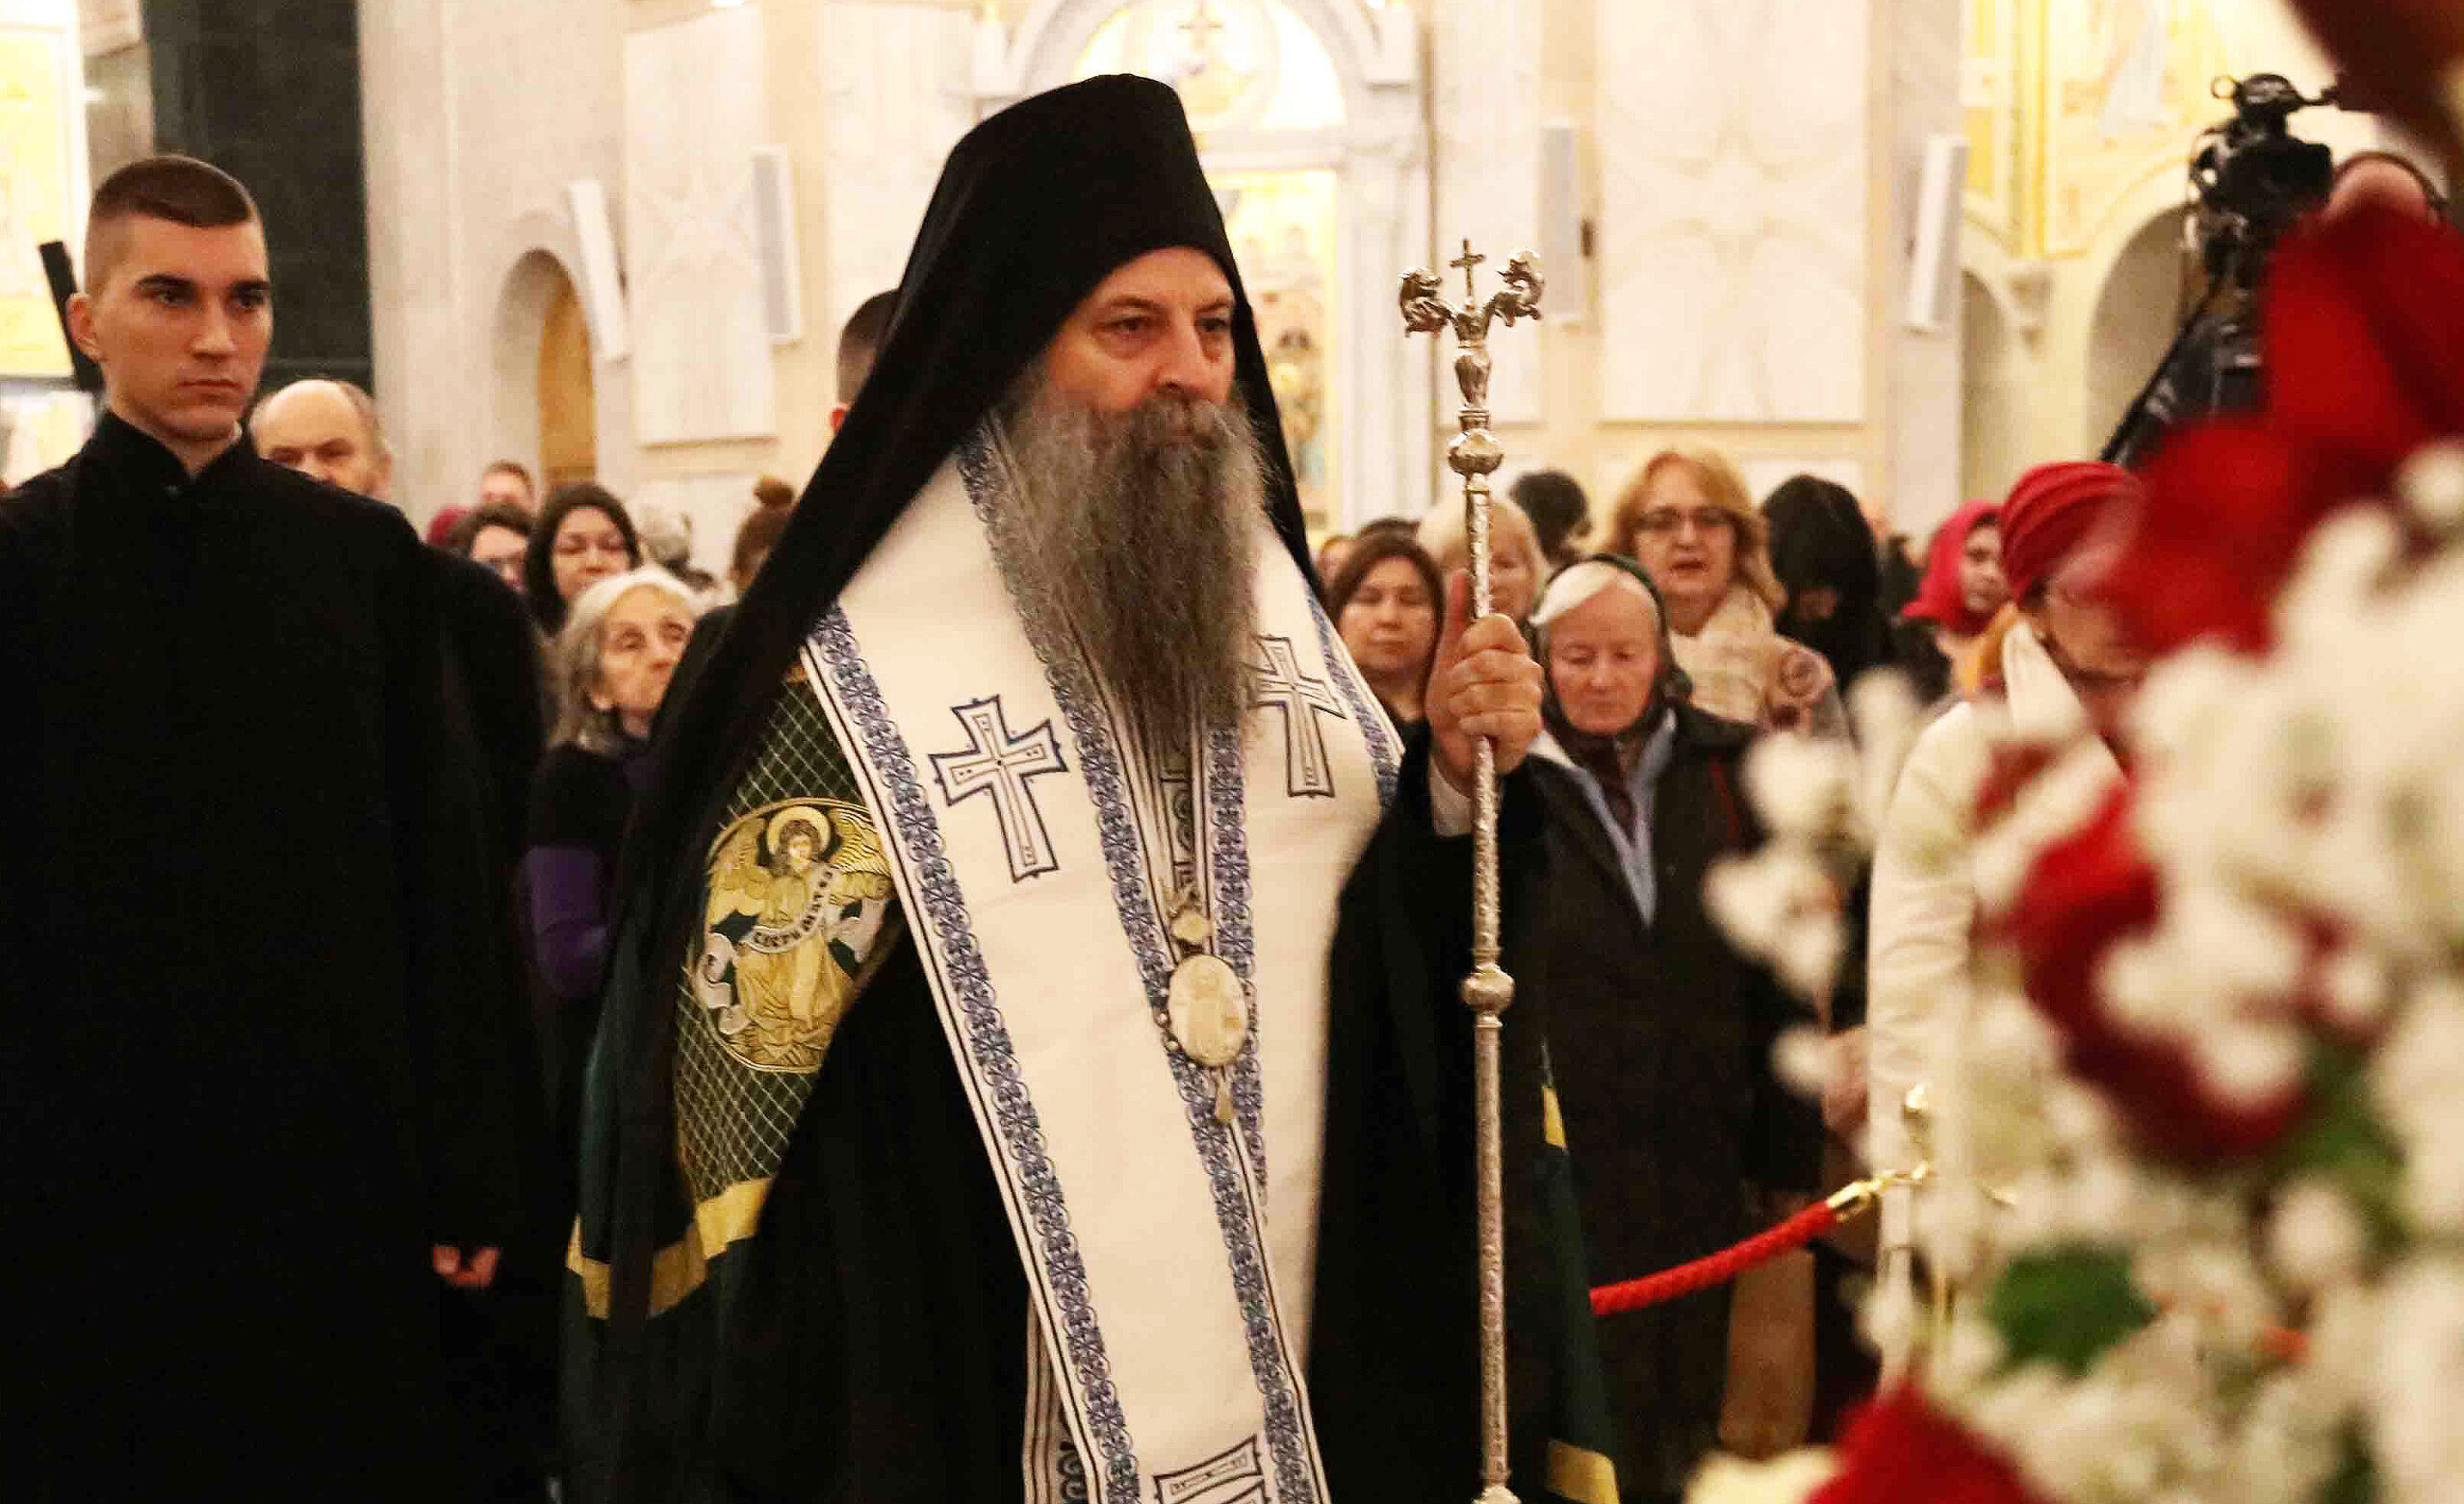 Le patriarche porphyre : « l’Église n’a jamais renoncé au kosovo-et-métochie et ne l’a jamais abandonné. jamais, pas même maintenant ! »